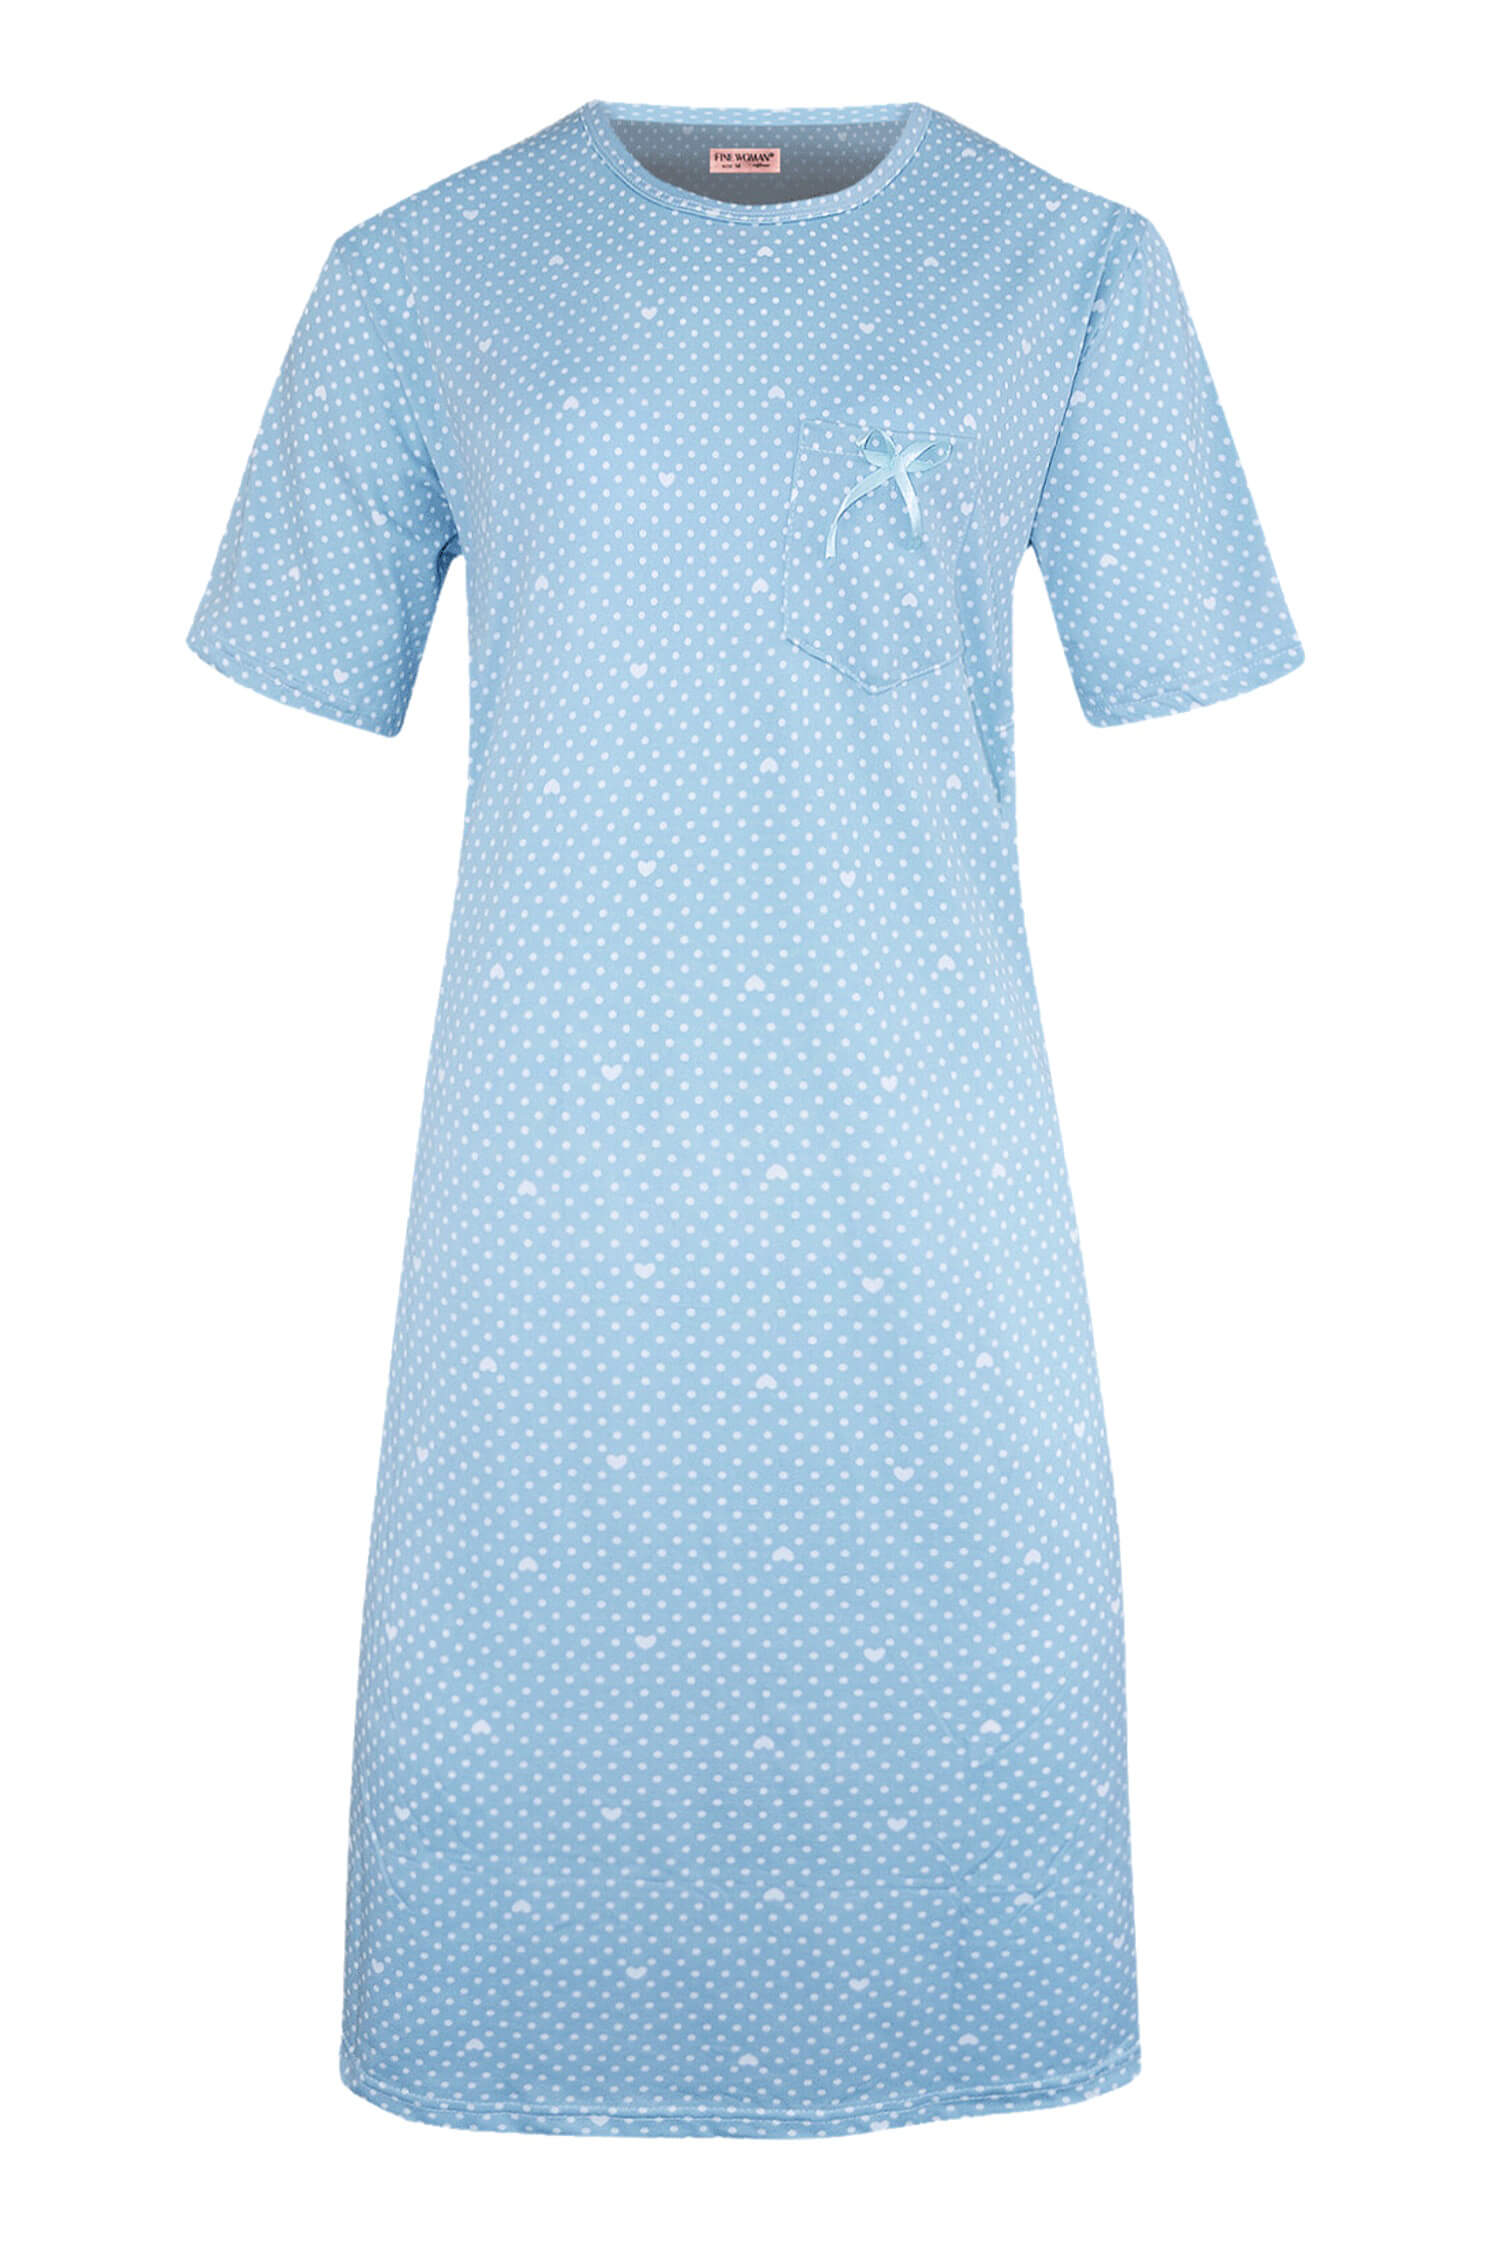 Danuška dámská noční košile s puntíky 6528 XXL světle modrá